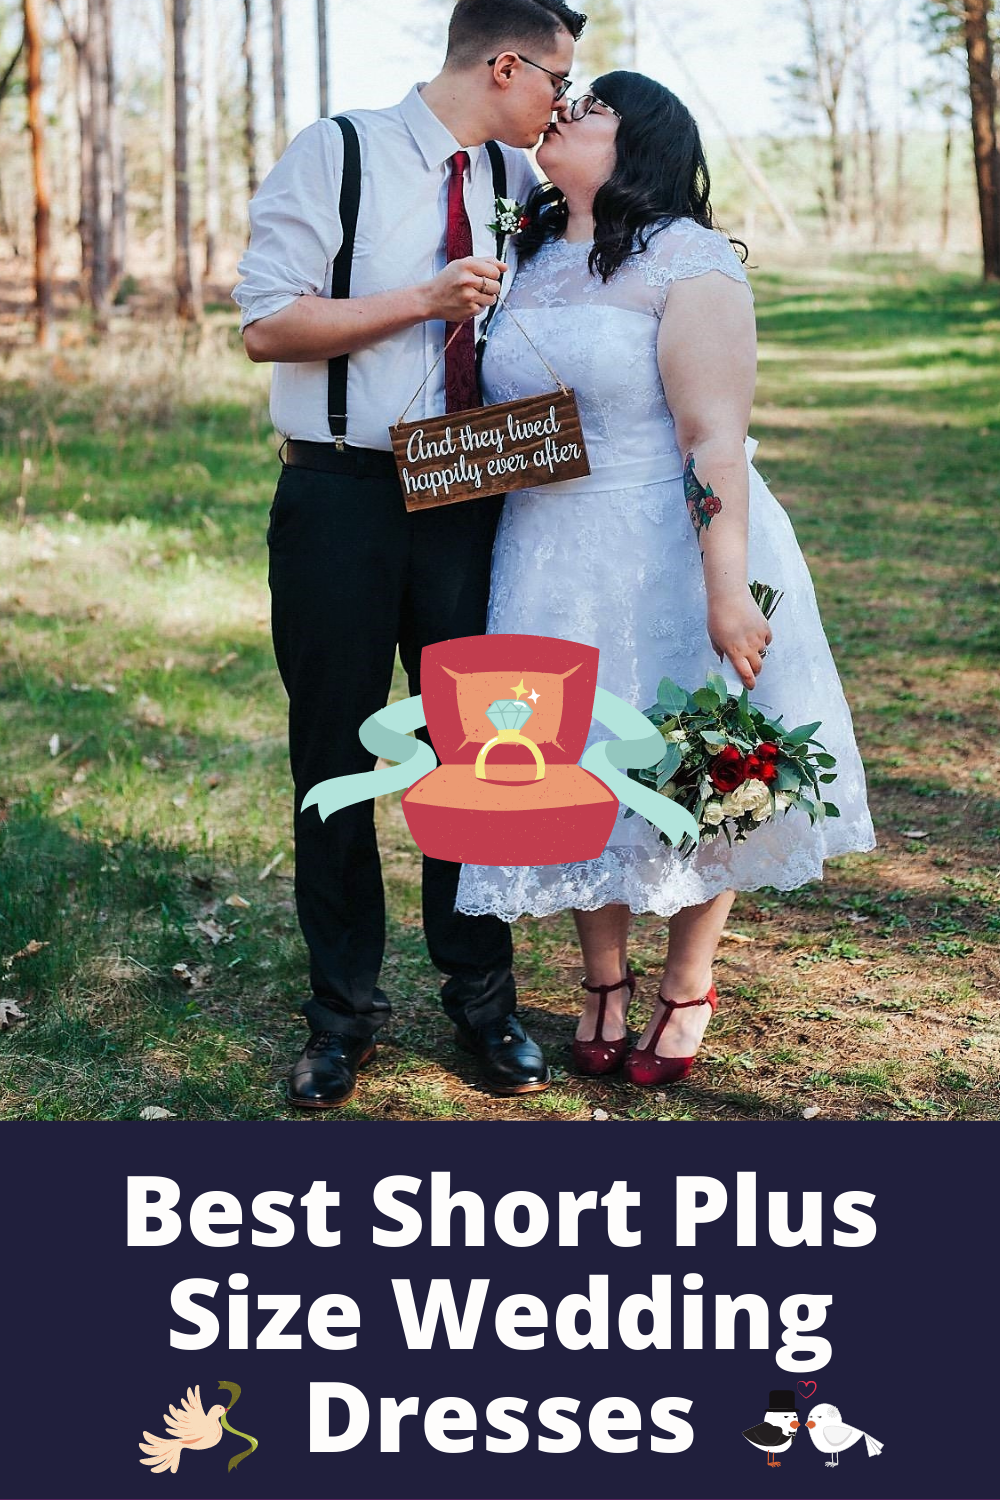 Best Short Plus Size Wedding Dresses